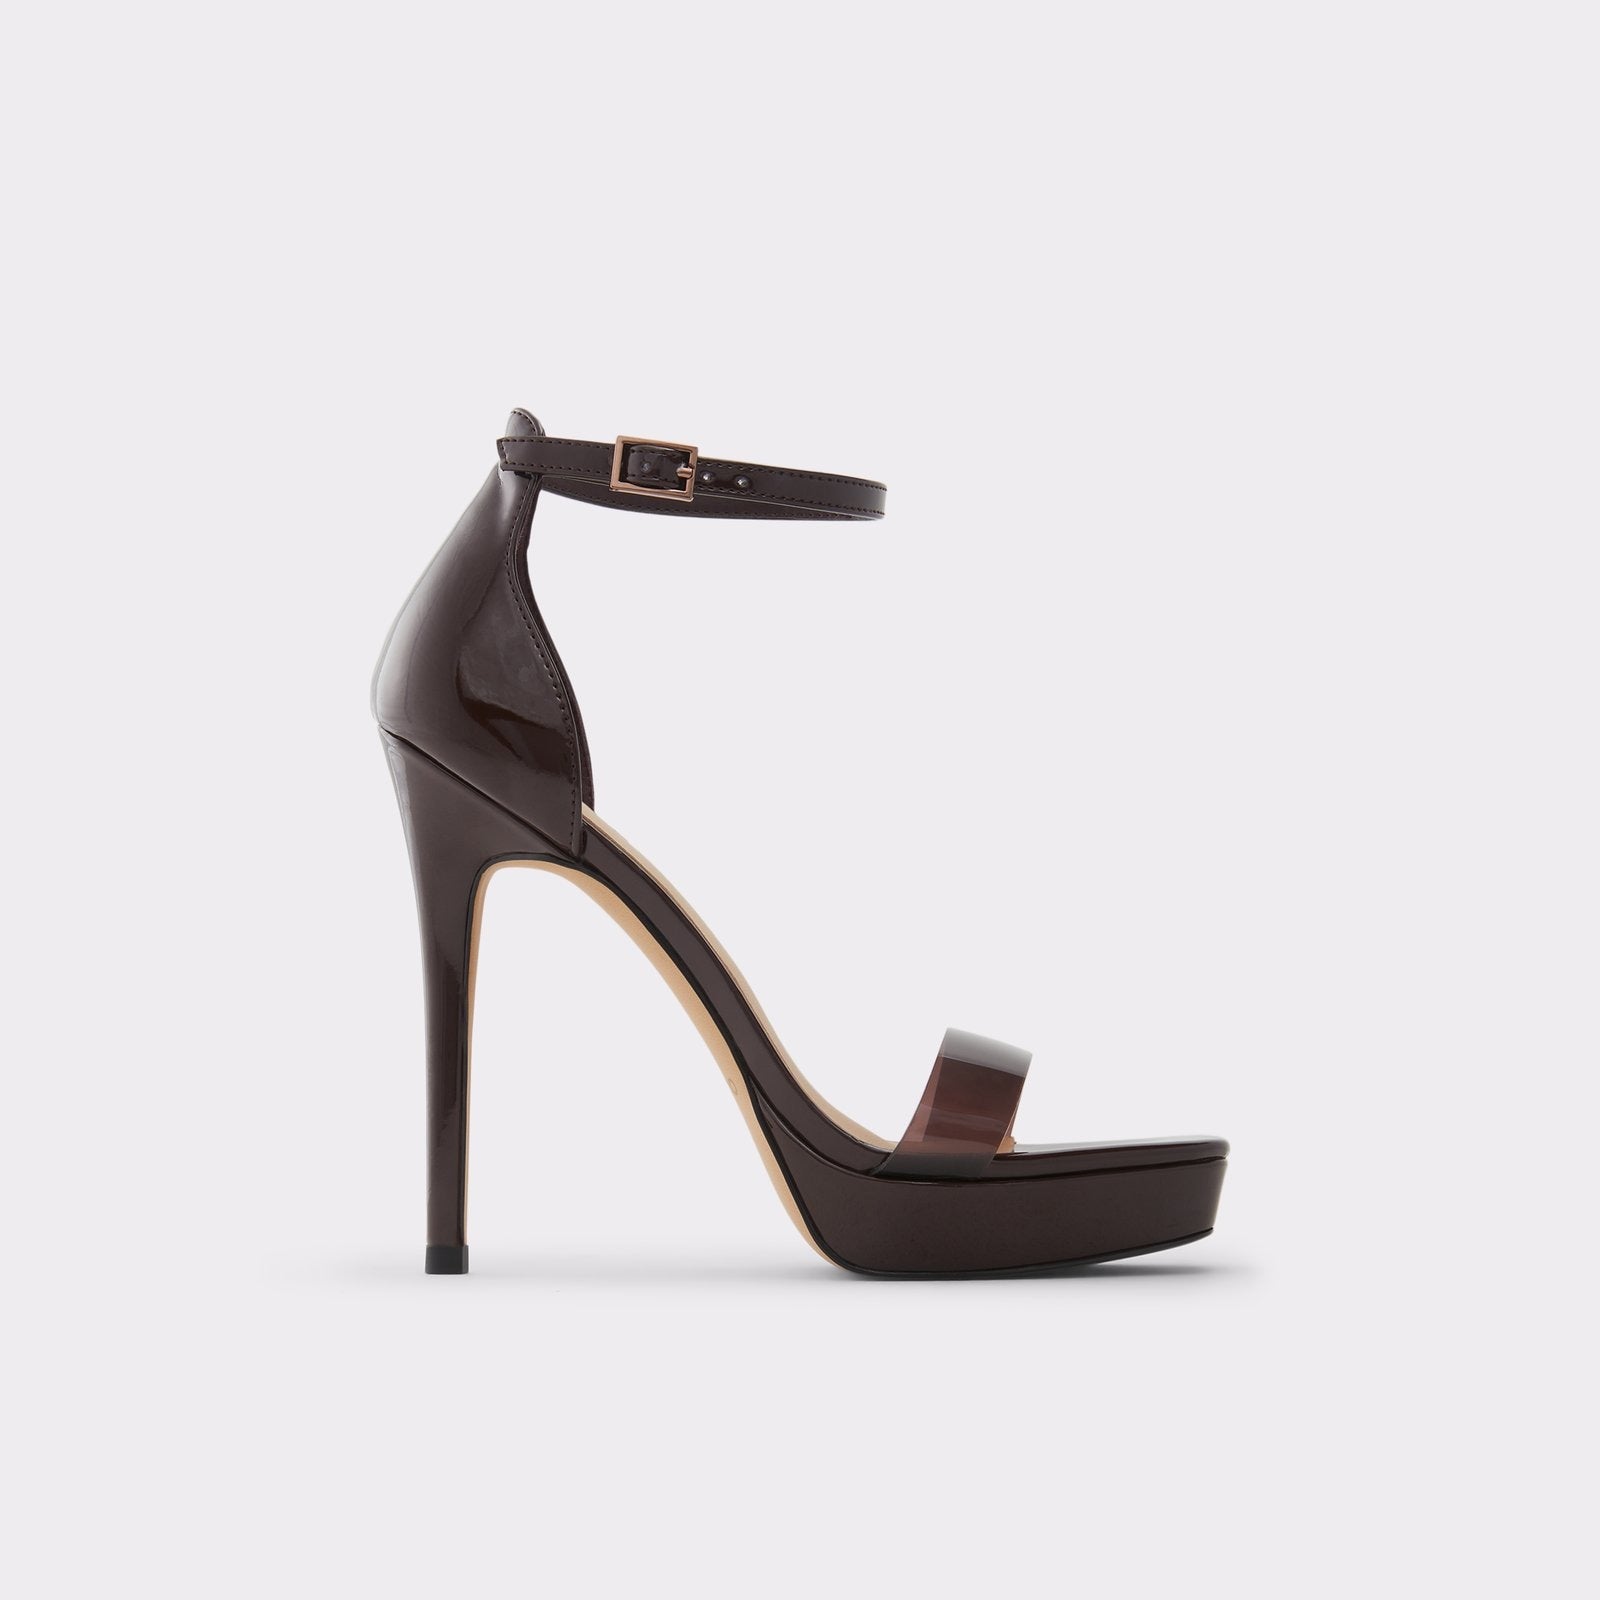 Scarlett Women Shoes - Dark Brown - ALDO KSA